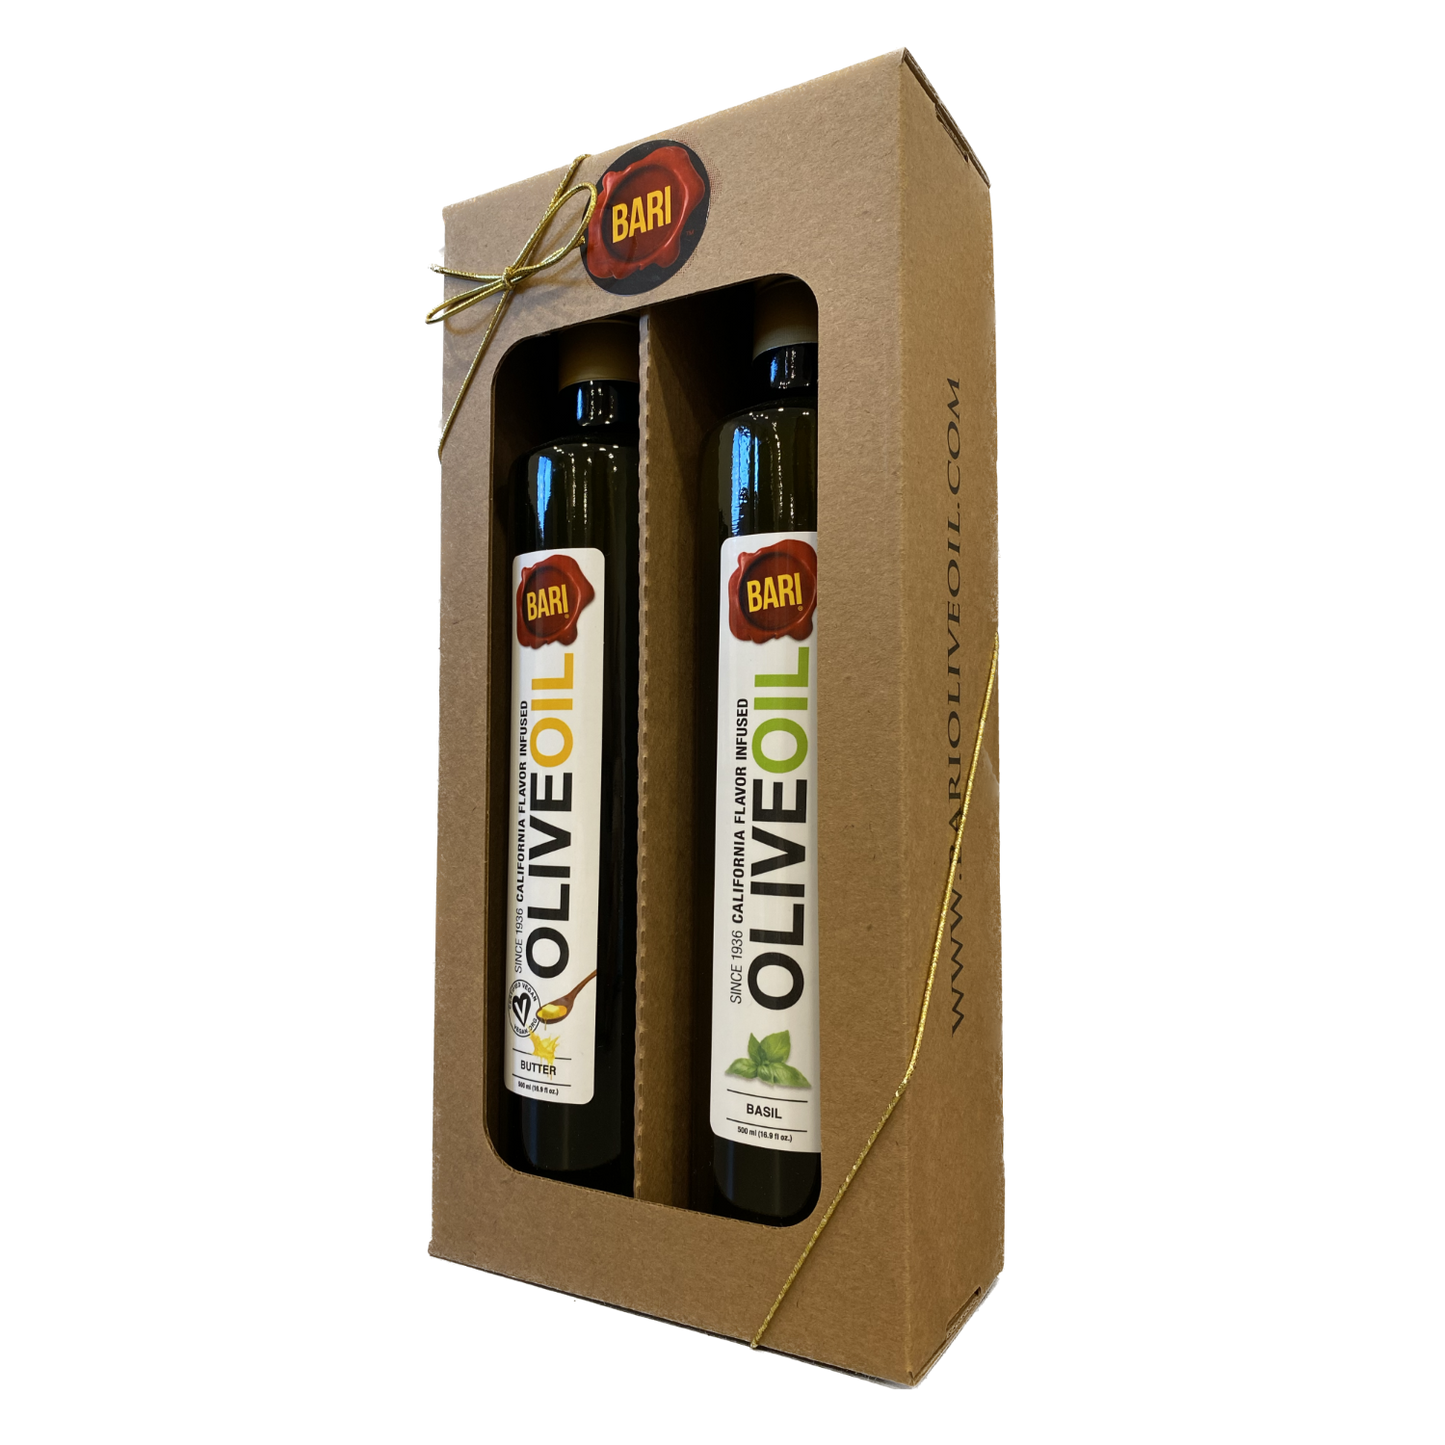 Bari Gift - Kraft Box - Two 500mL Bottles